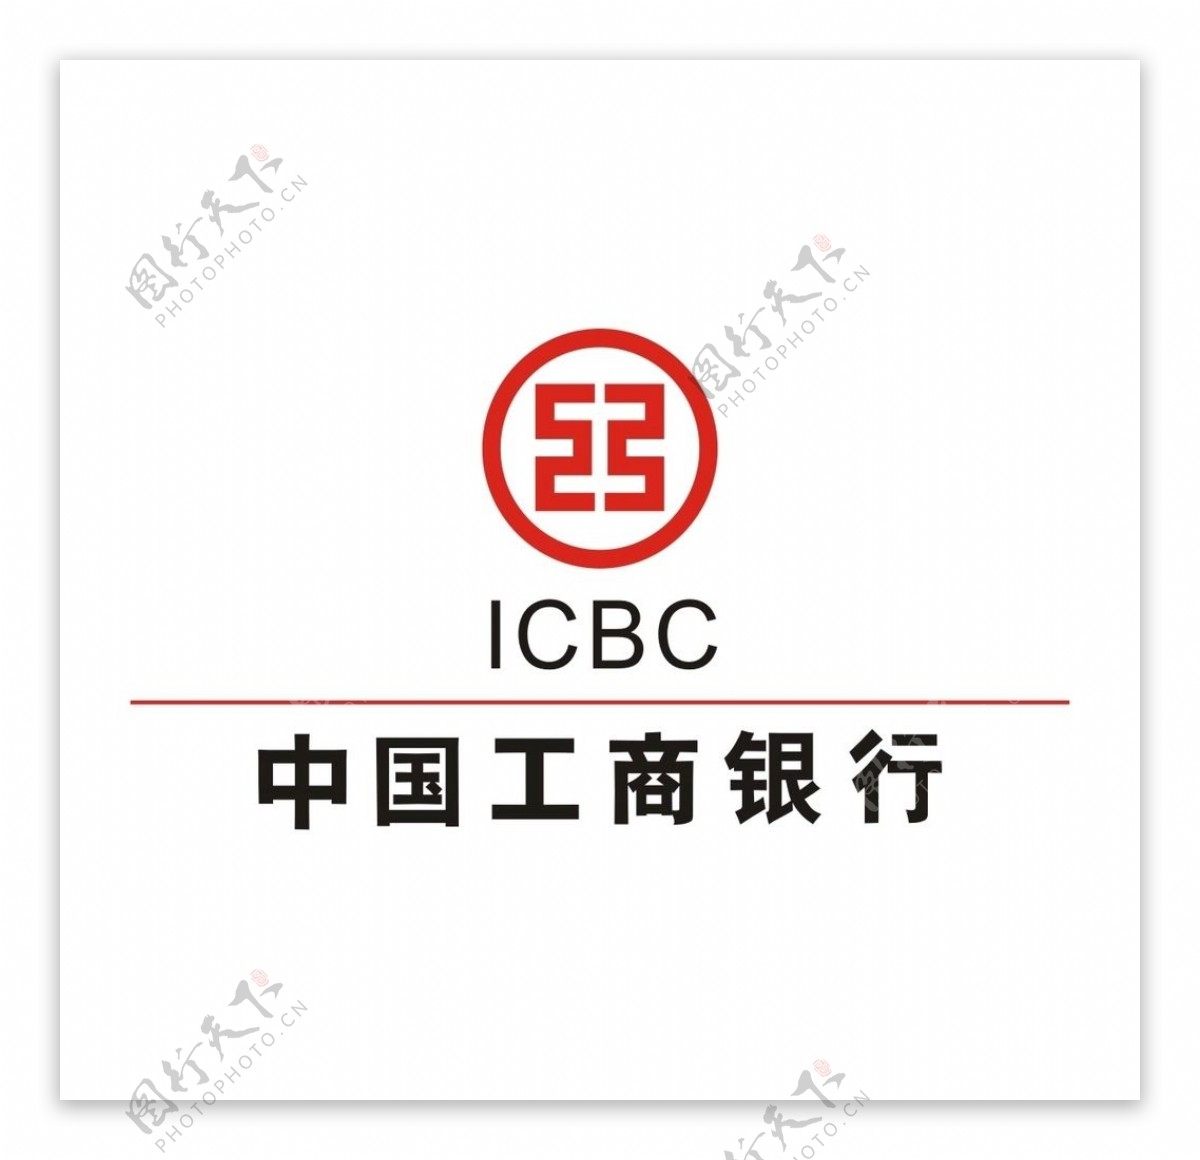 中国工商银行LOGO